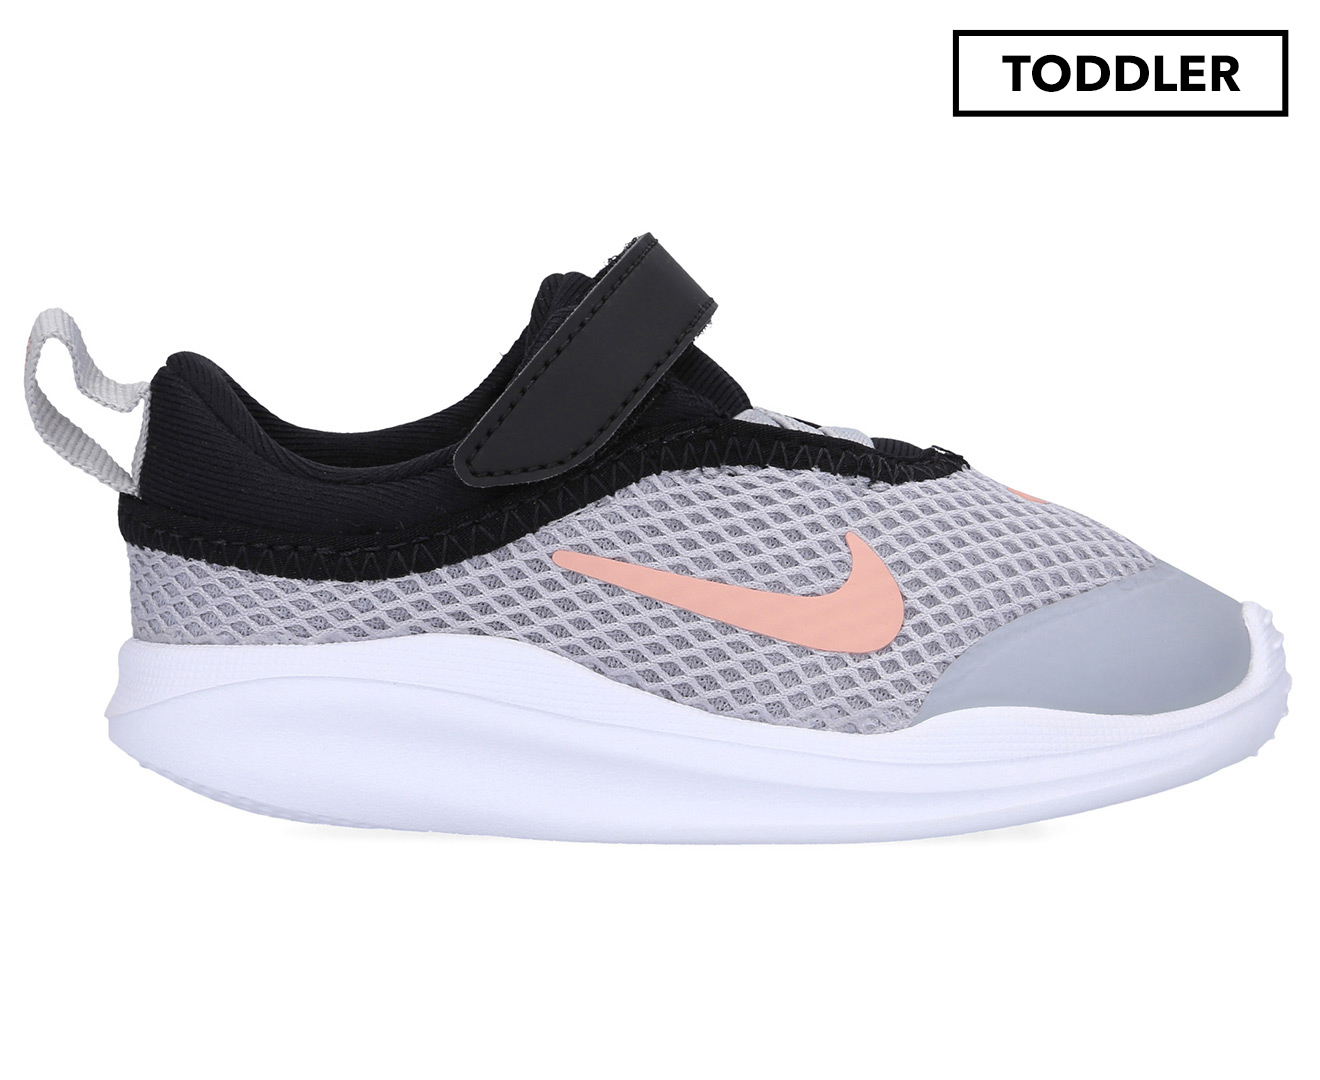 Nike Toddler Girls' ACMI Sneakers 